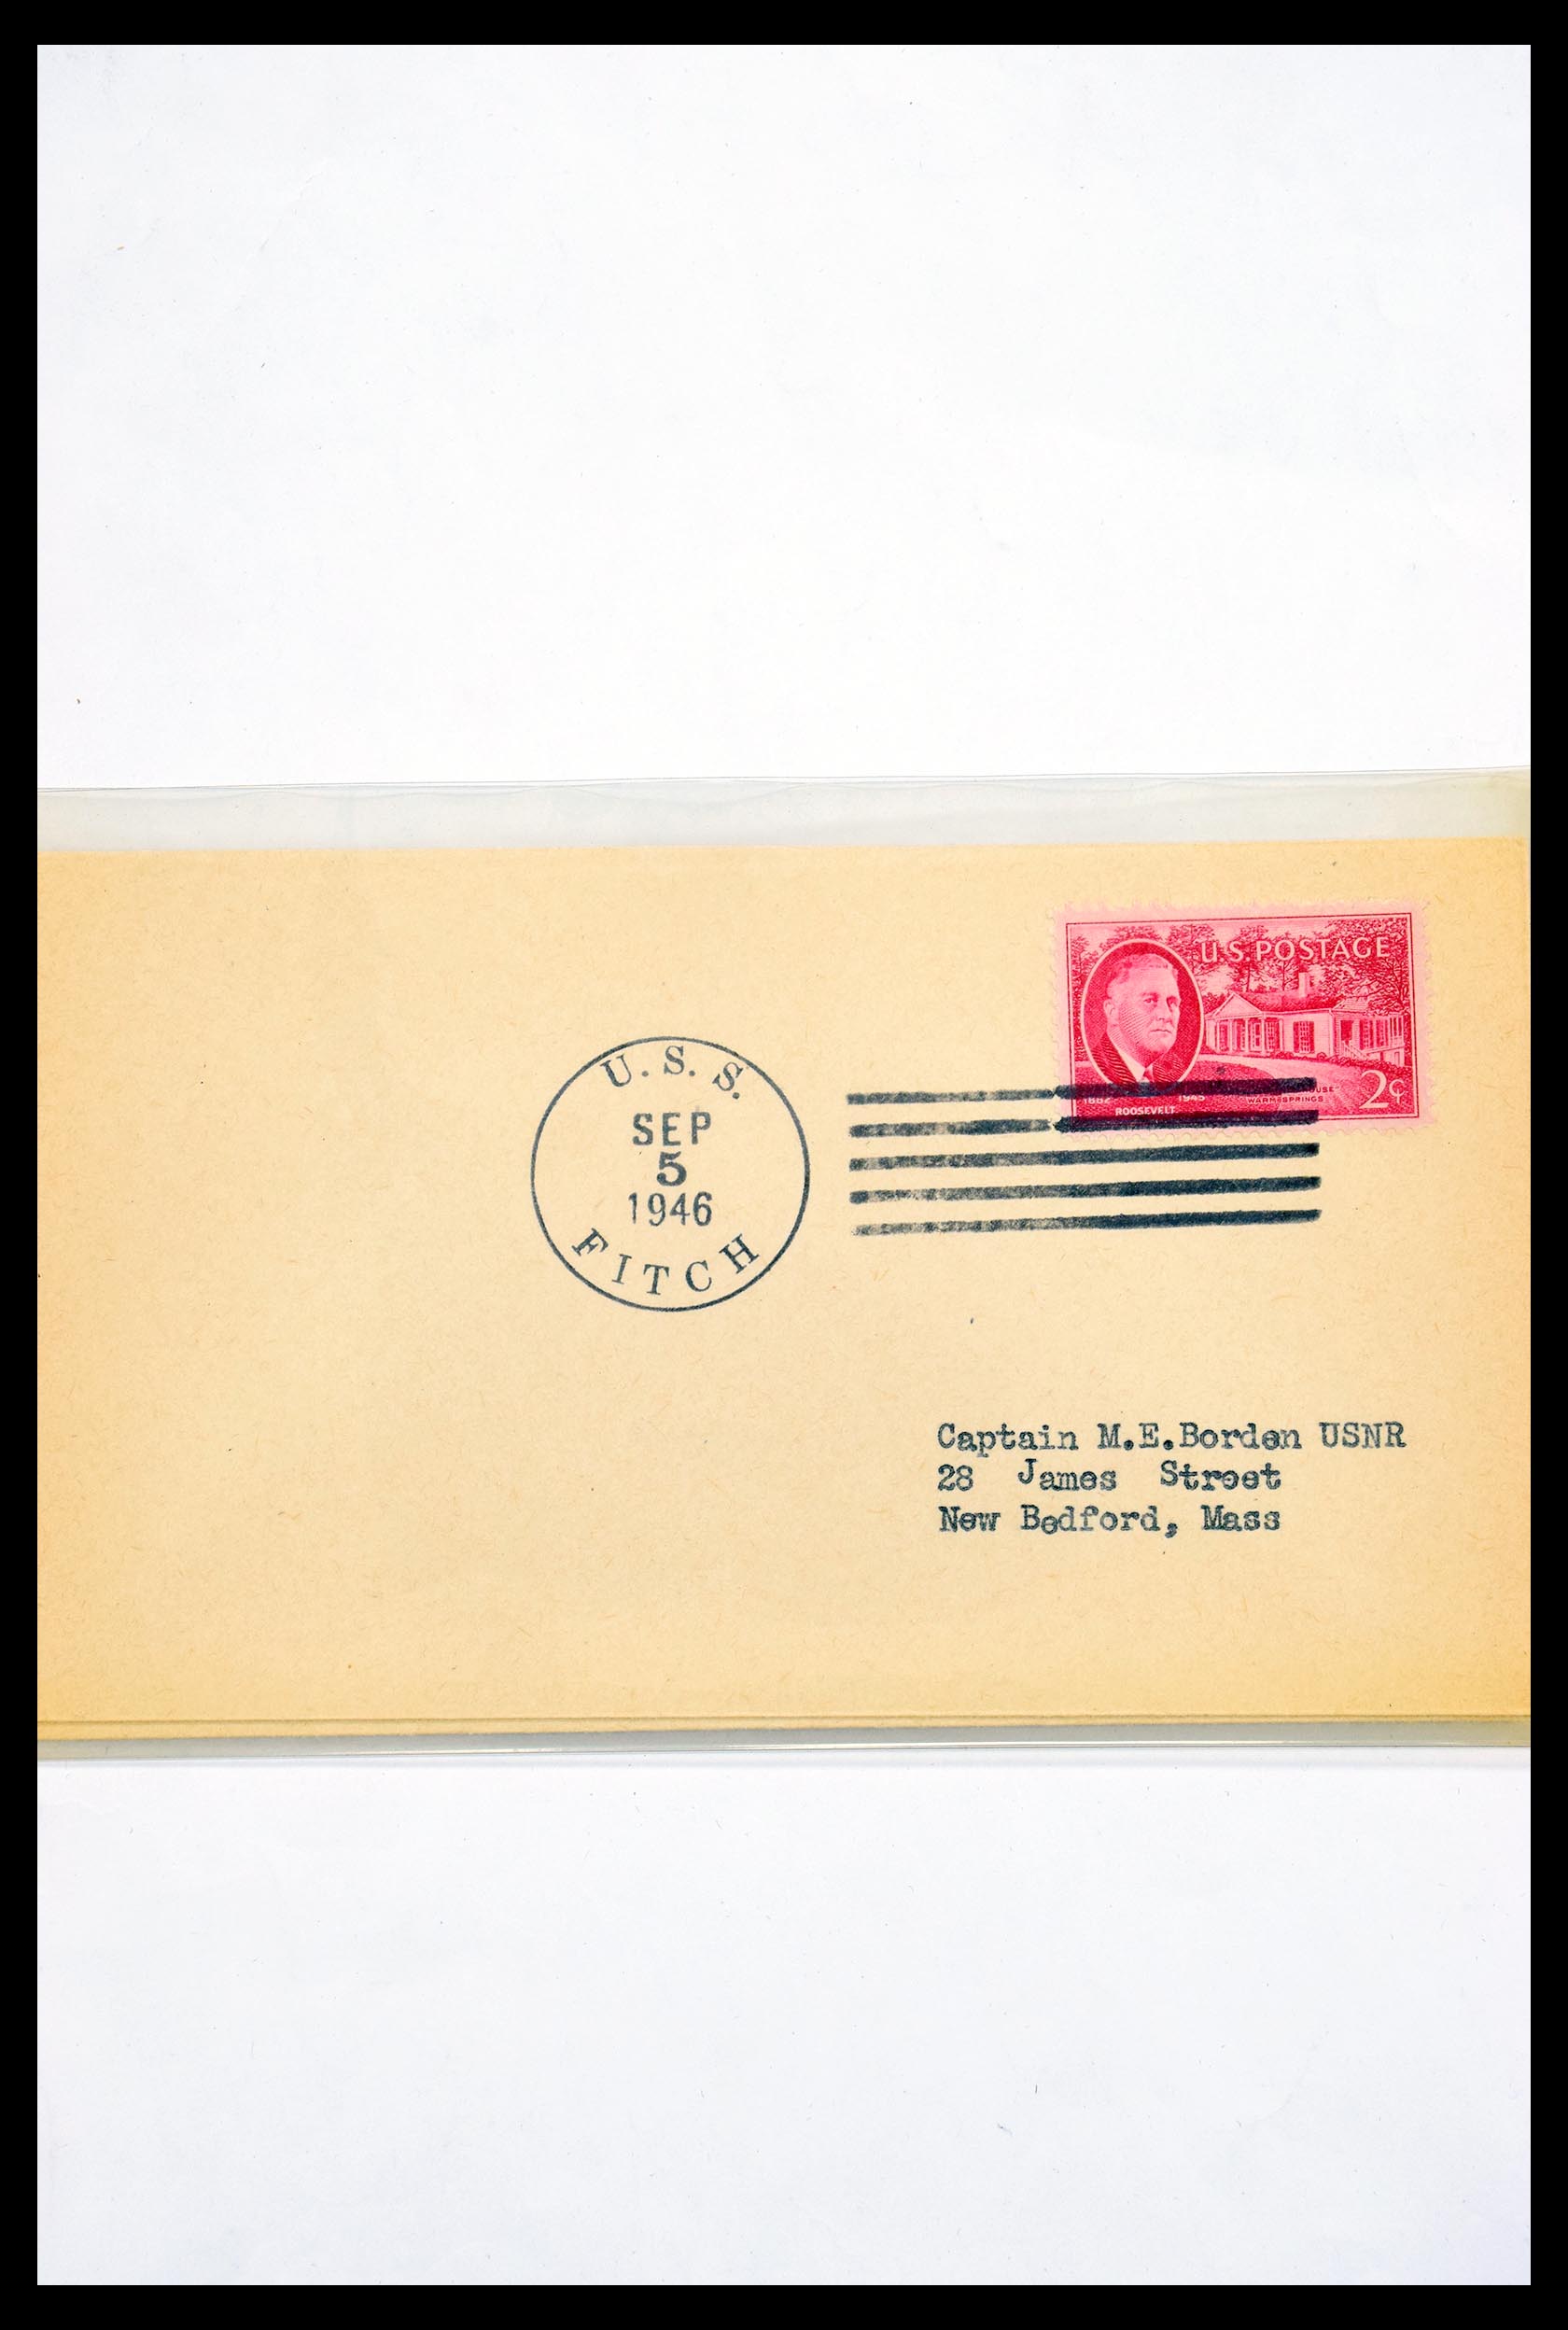 30341 314 - 30341 USA scheepspost brieven 1930-1970.